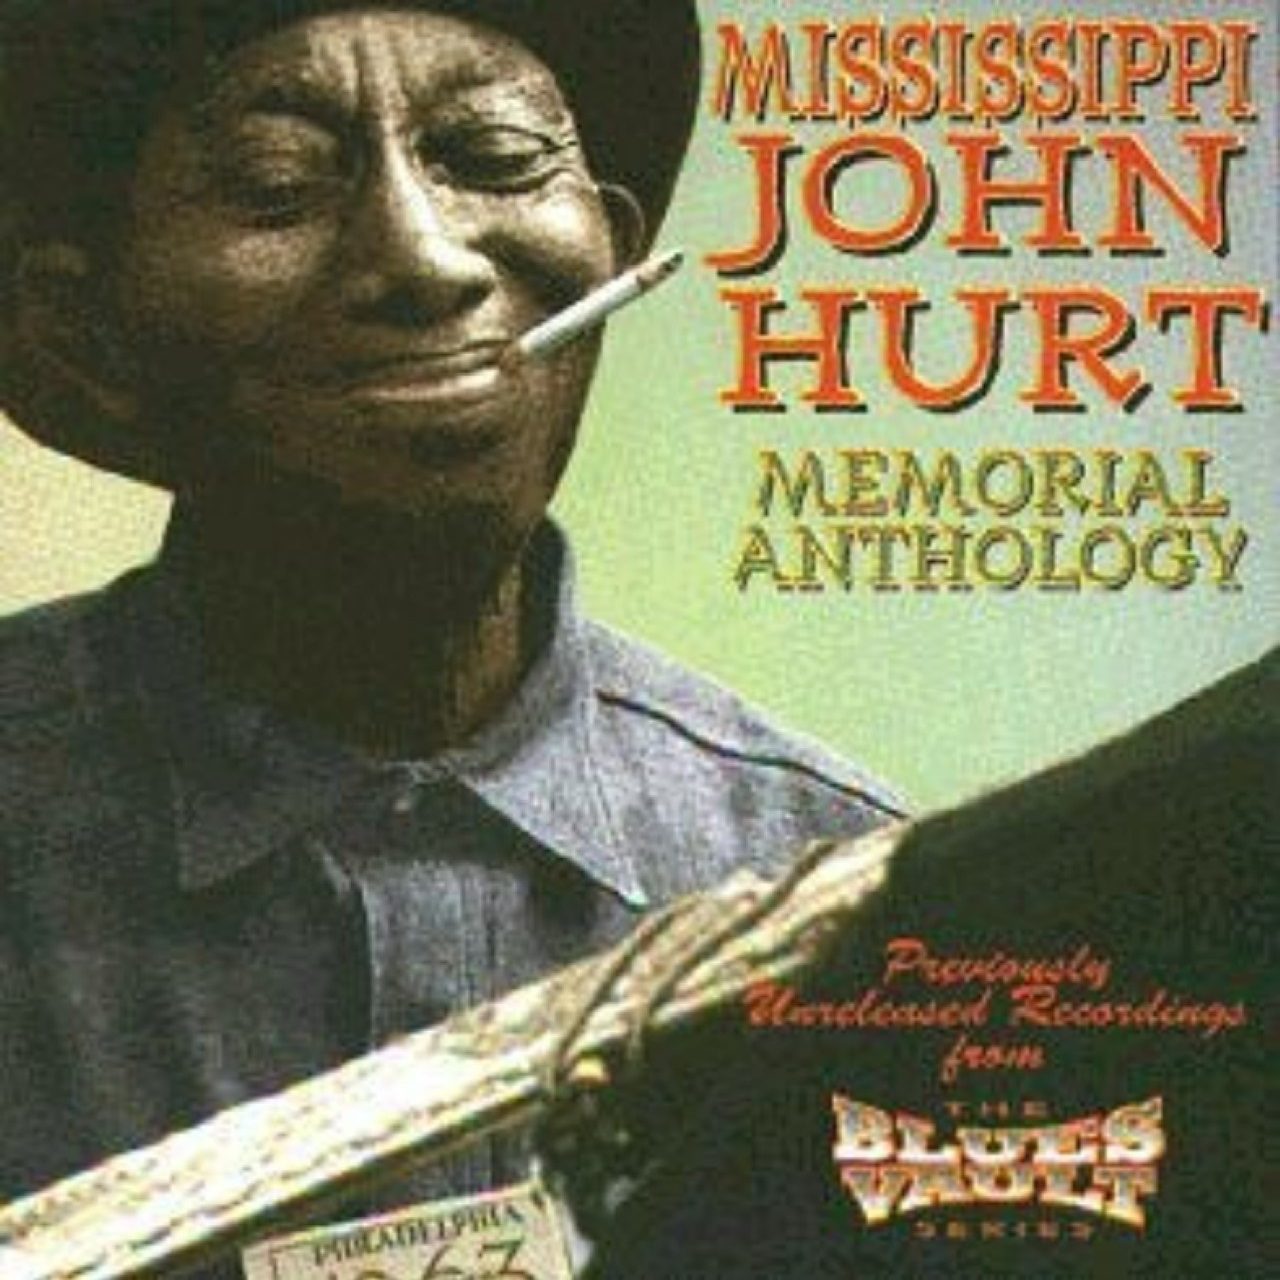 Mississippi John Hurt – Memorial Anthology cover album